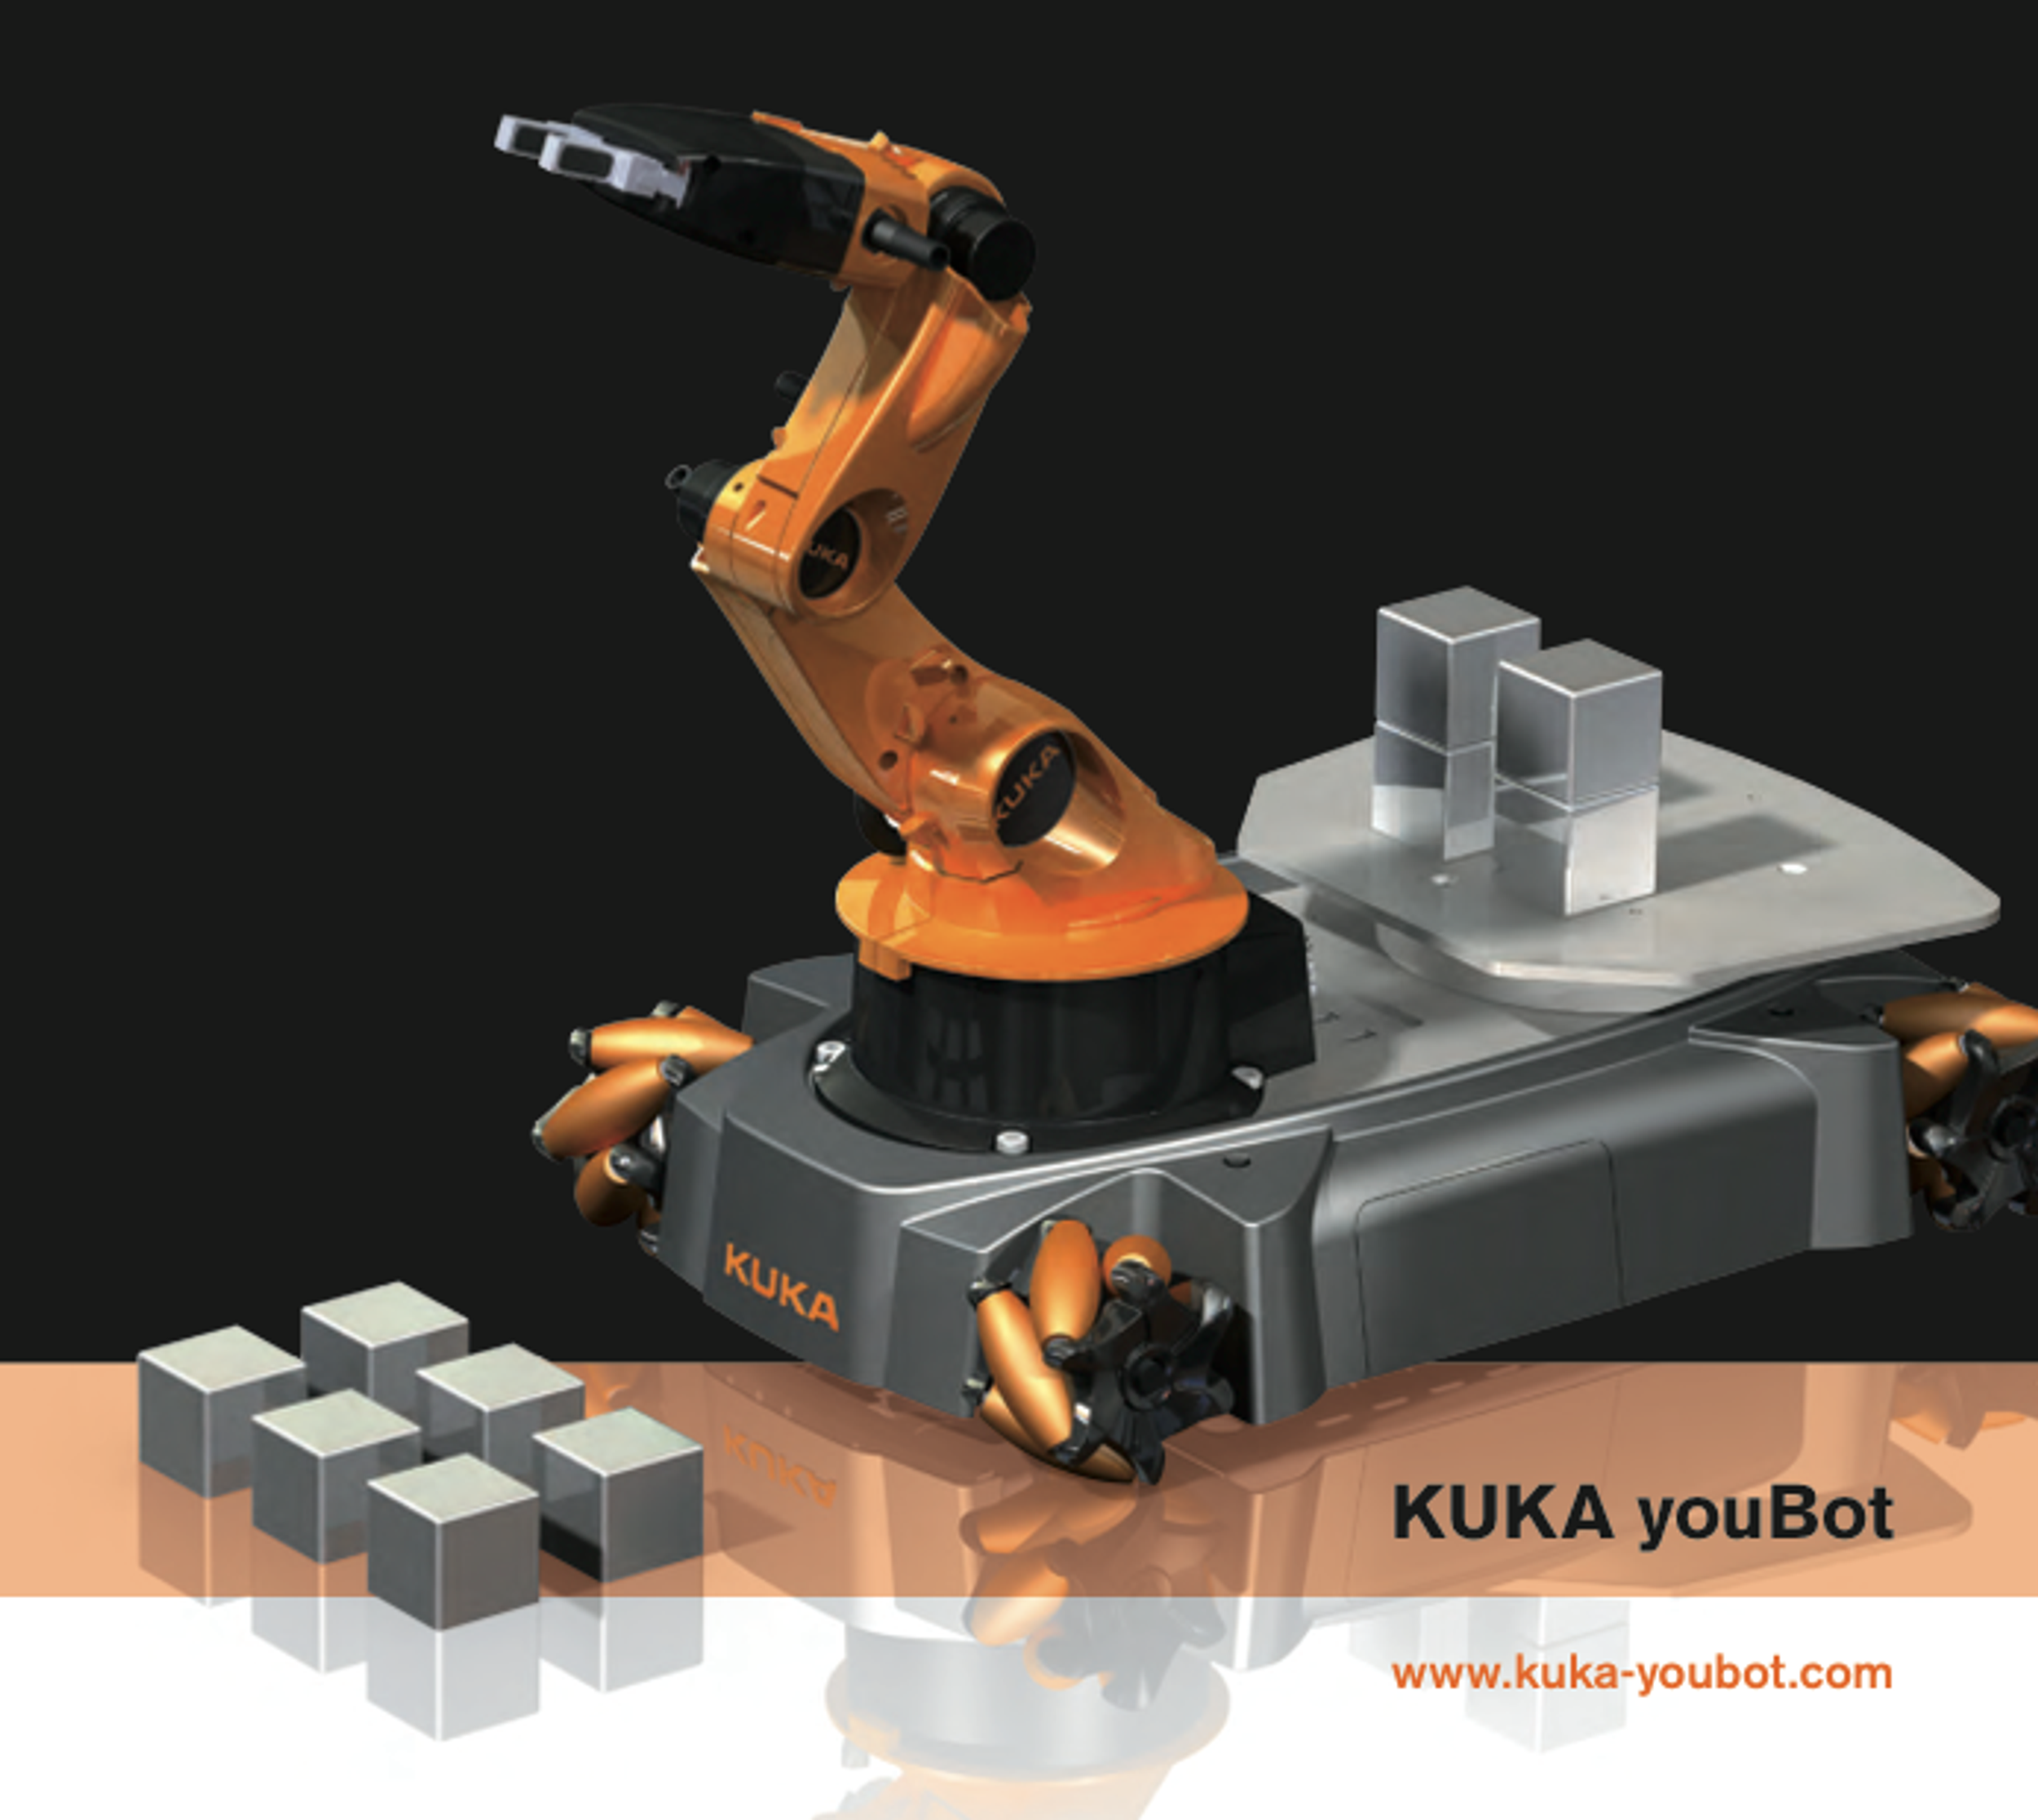 KUKA's youBot Mobile Manipulator Unveiled